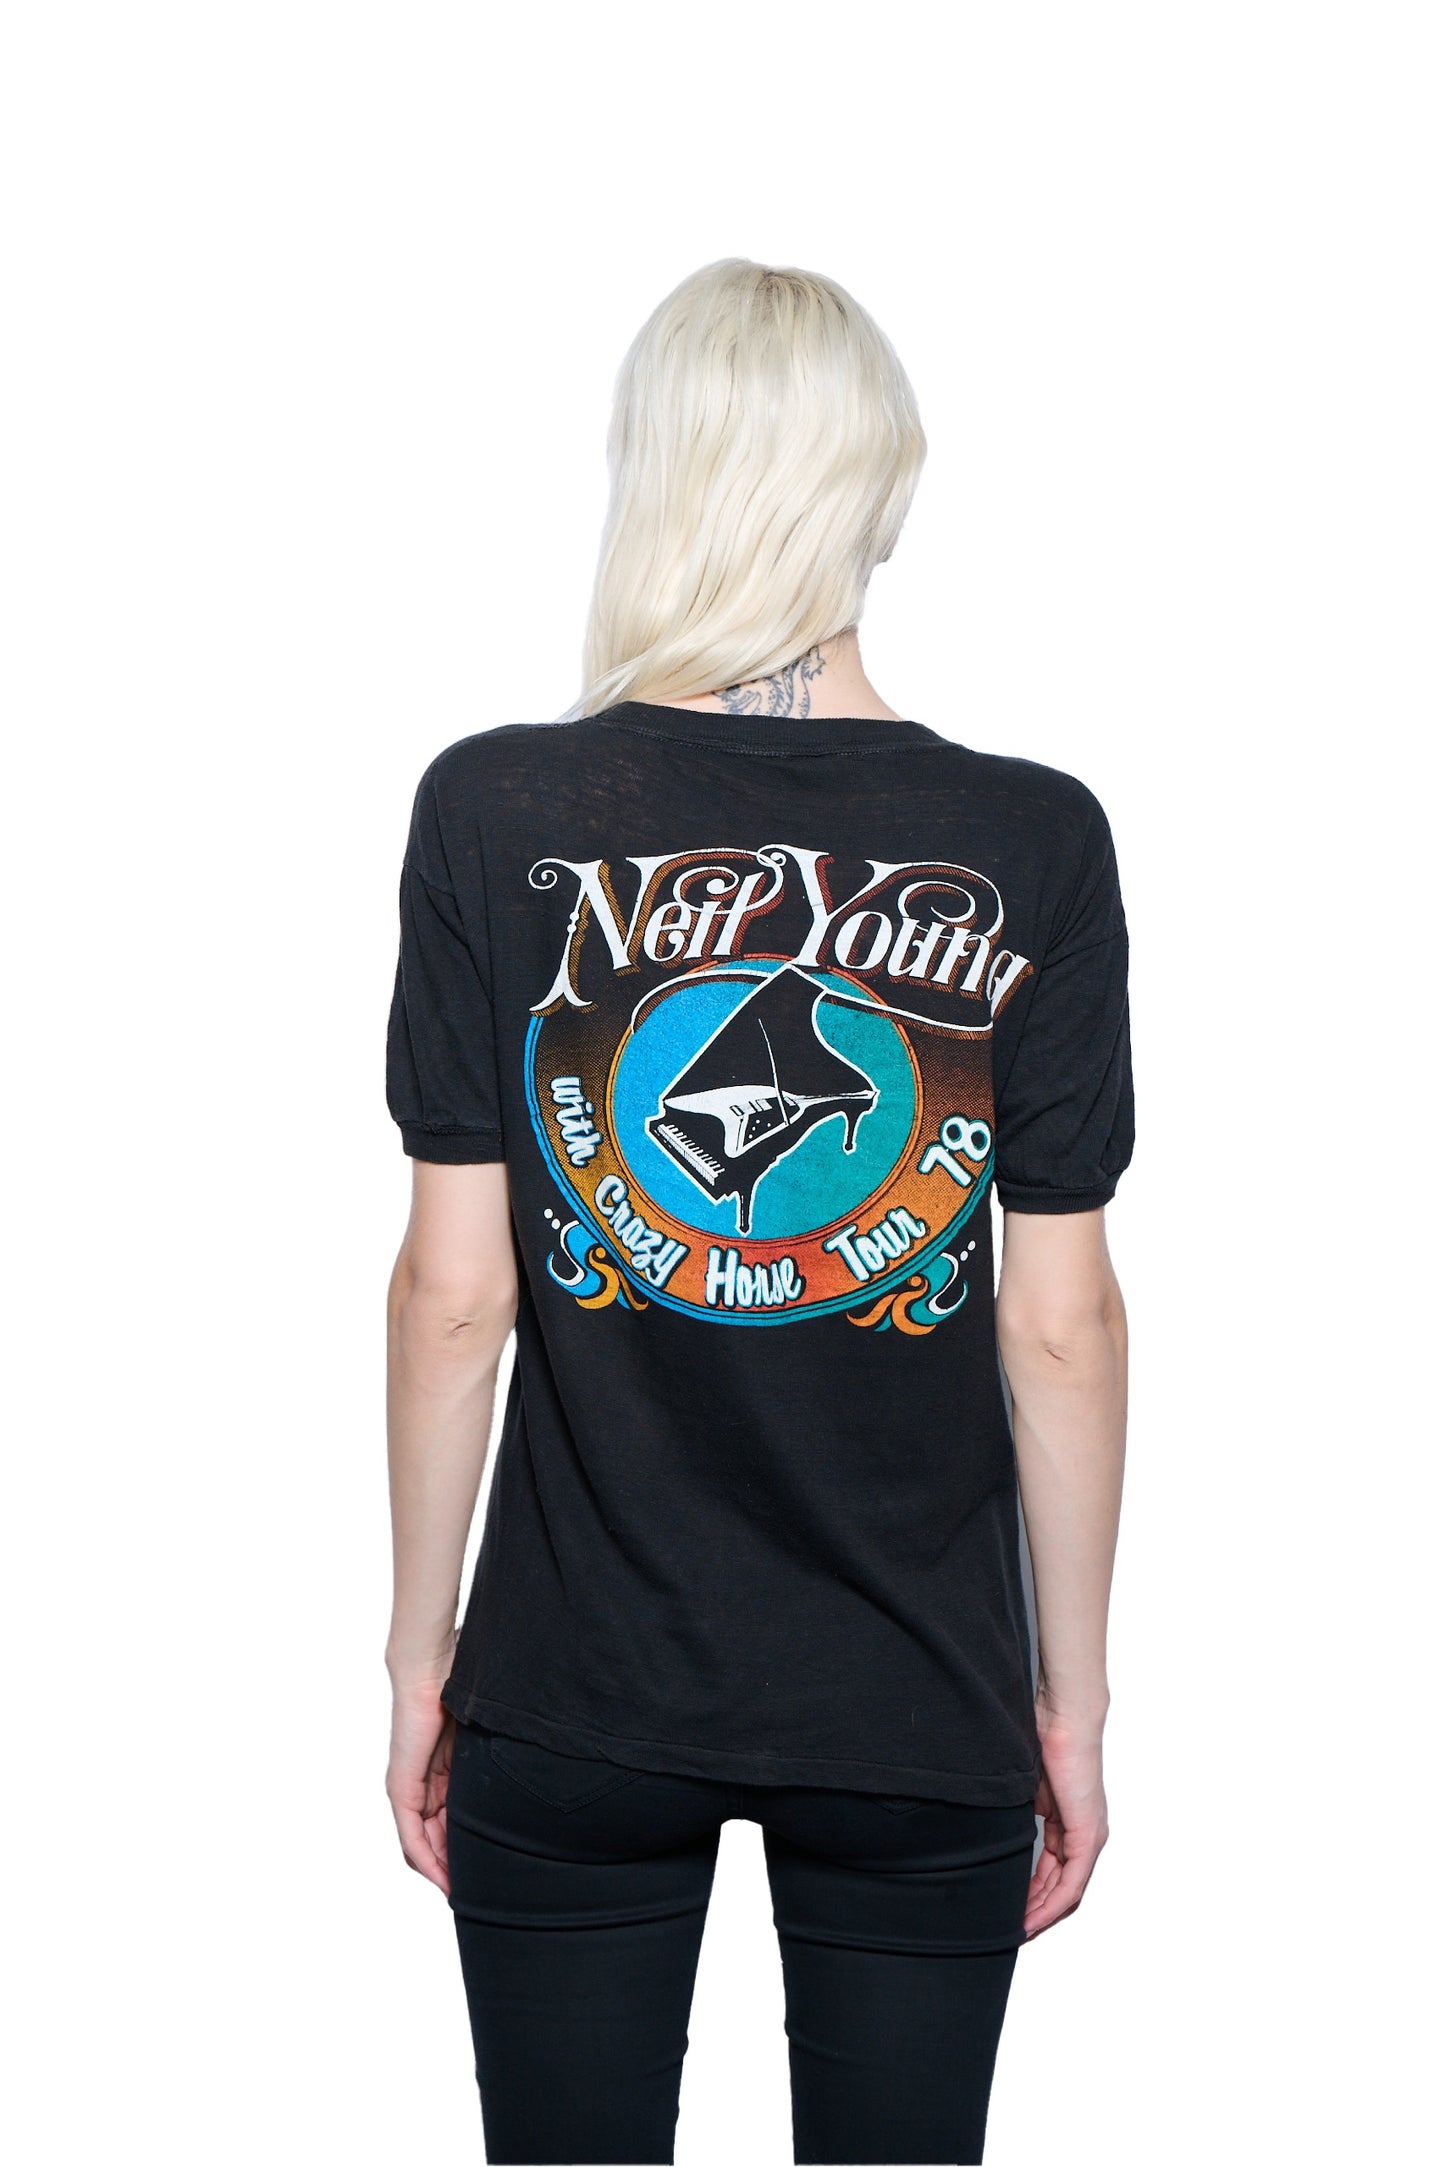 Vintage 1970's Neil Young Tour T-Shirt